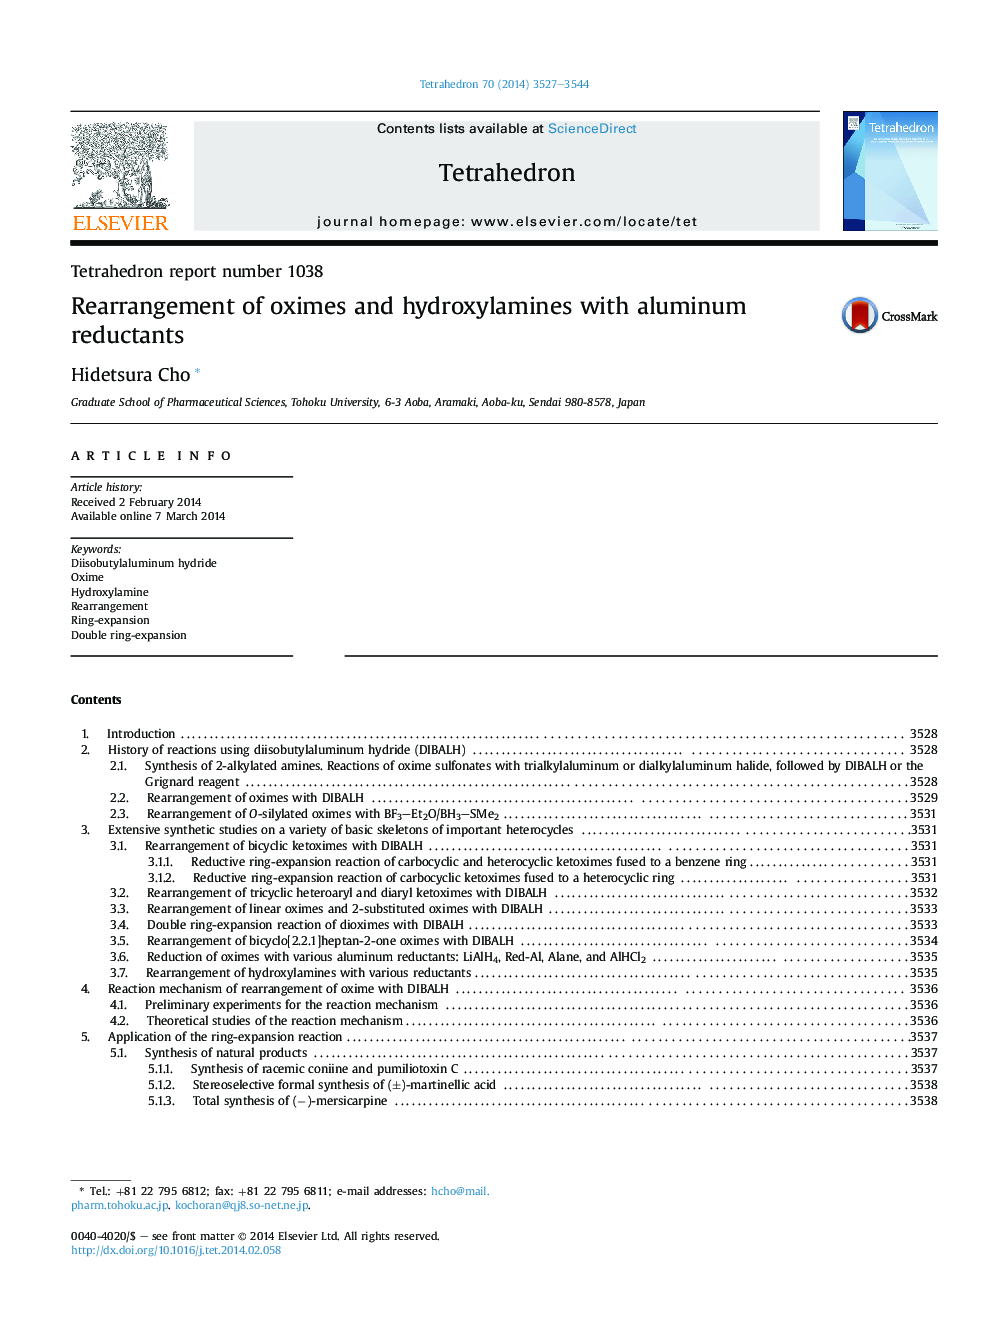 گزارش تتراهیدور شماره 1038 تغییر ترکیب اکسیم و هیدروکسیلامین با رقیق سازی آلومینیوم 